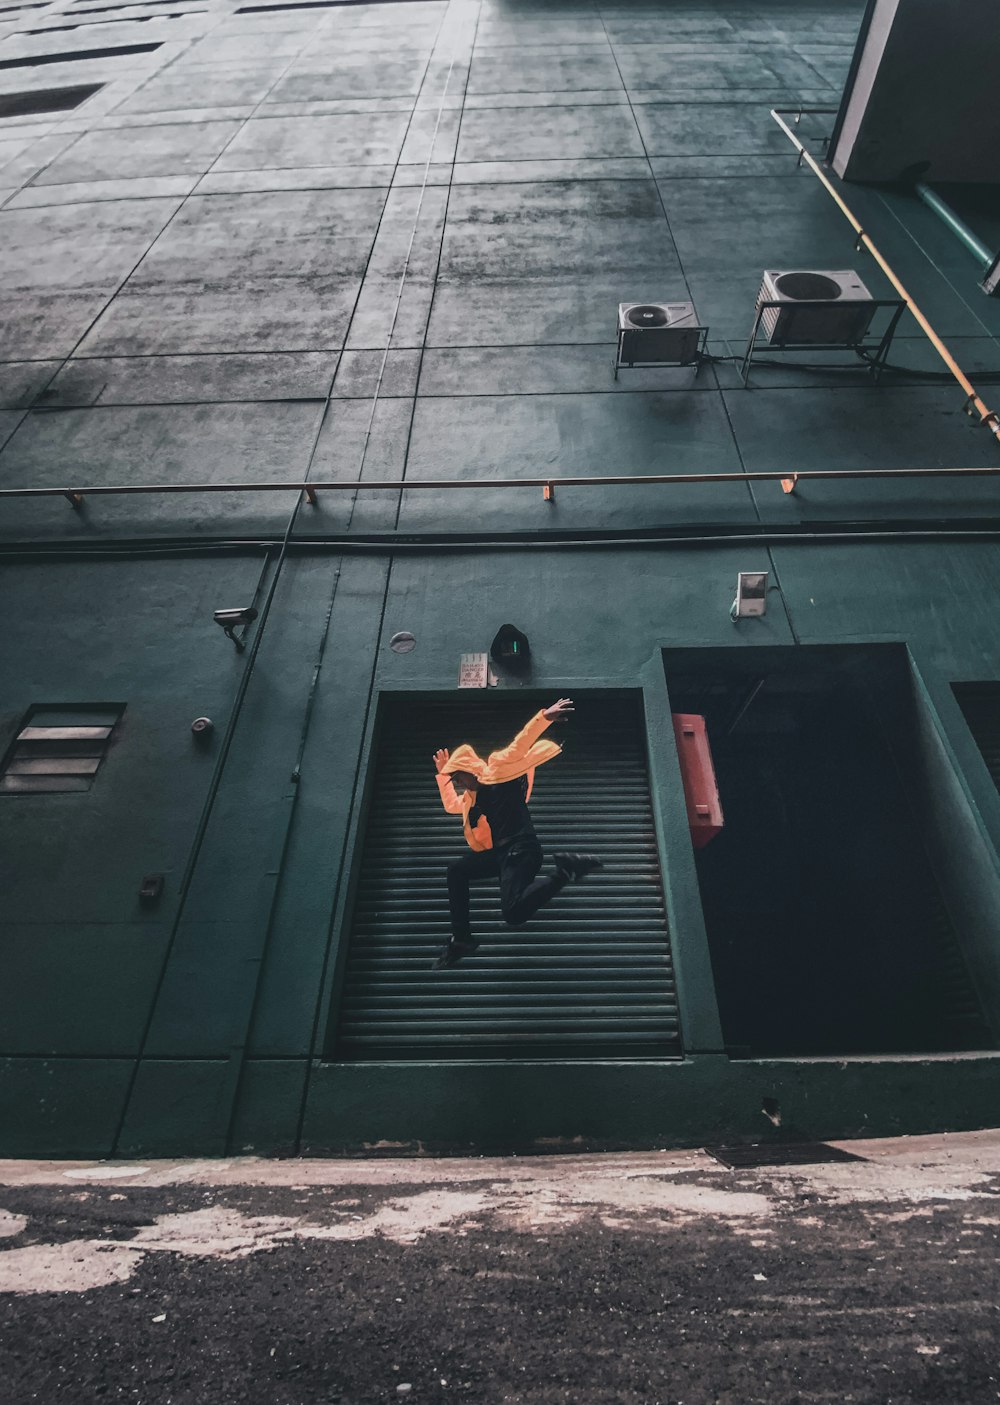 建物の近くでジャンプする人のタイムラプス写真